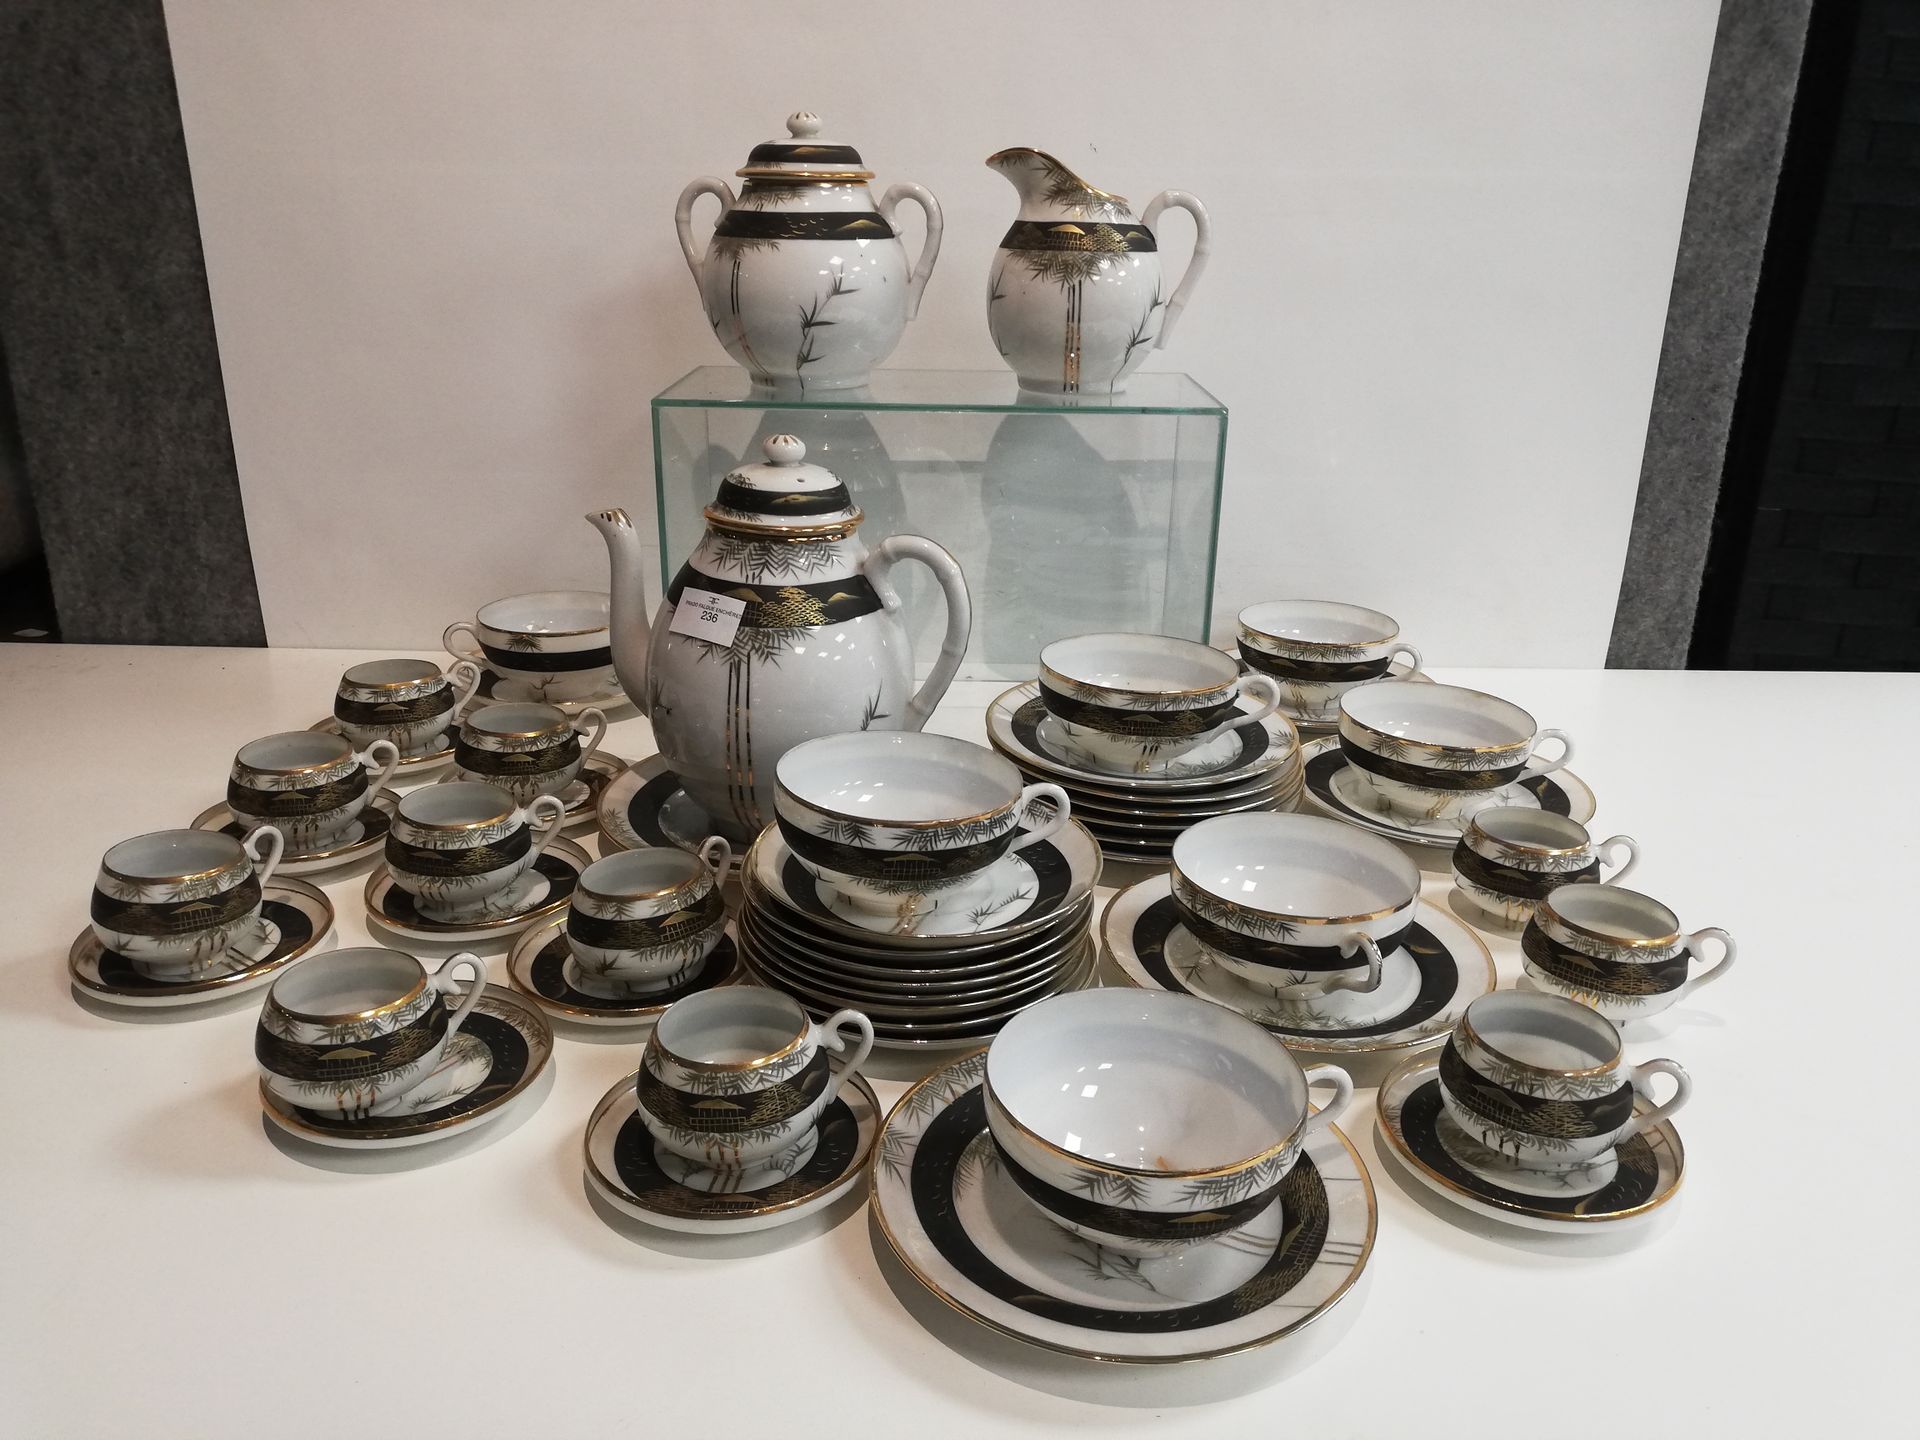 Null 萨摩瓷茶具和咖啡具，包括一个茶壶，牛奶壶，糖碗，七个茶杯及其茶托，九个咖啡杯及其茶托，十个蛋糕盘，一个大盘子，两个咖啡杯和两个茶托